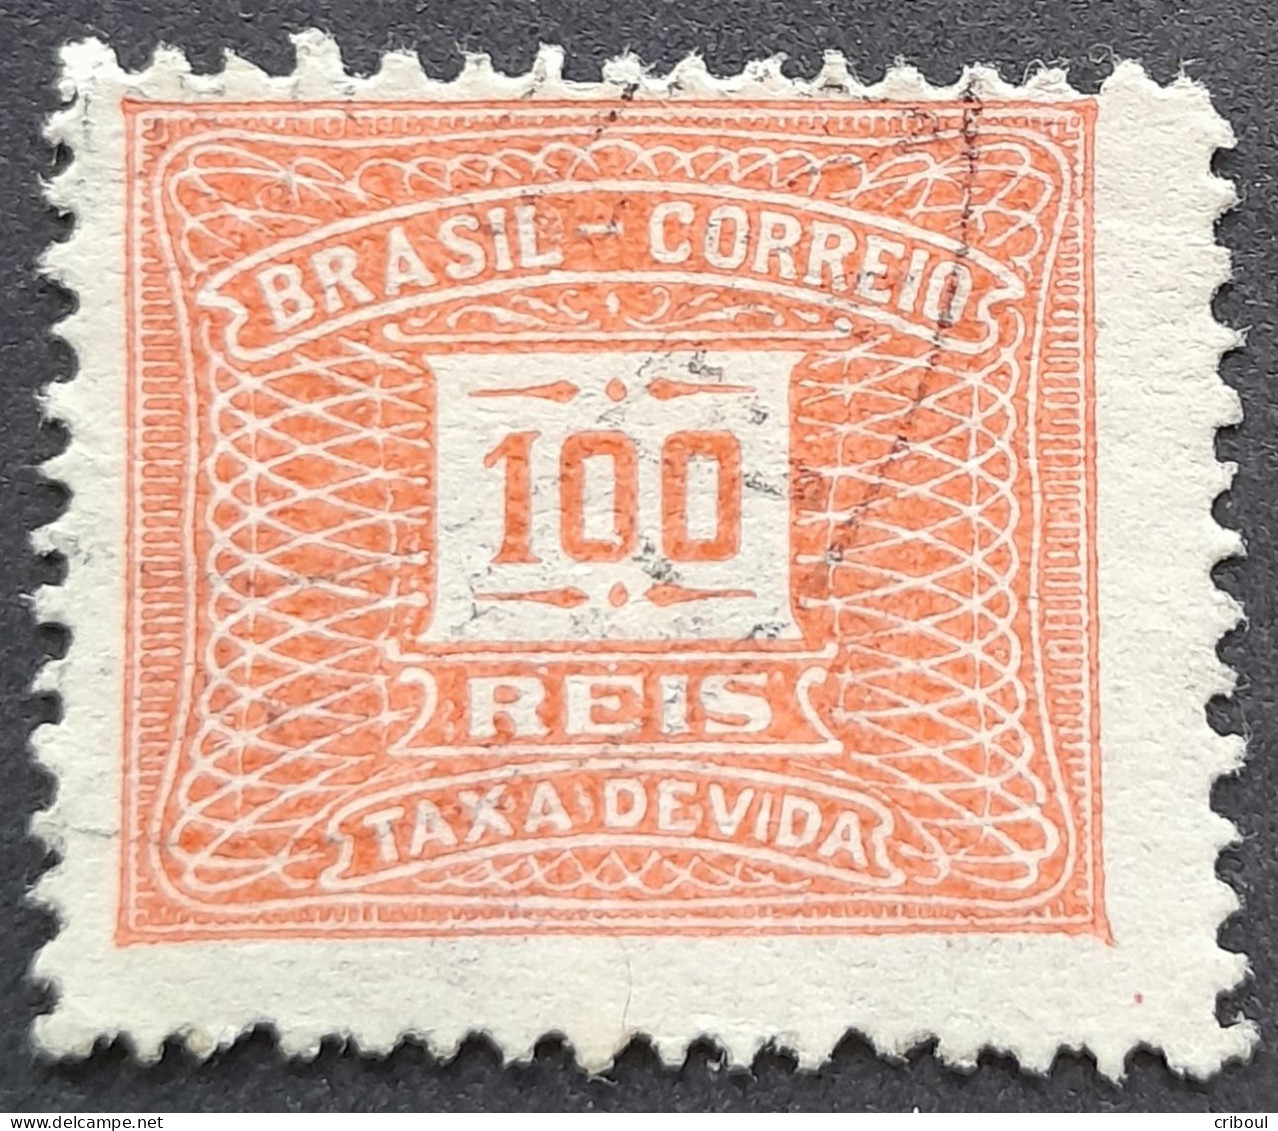 Bresil Brasil Brazil 1919 Taxe Tax Taxa Yvert 44d O Used - Portomarken